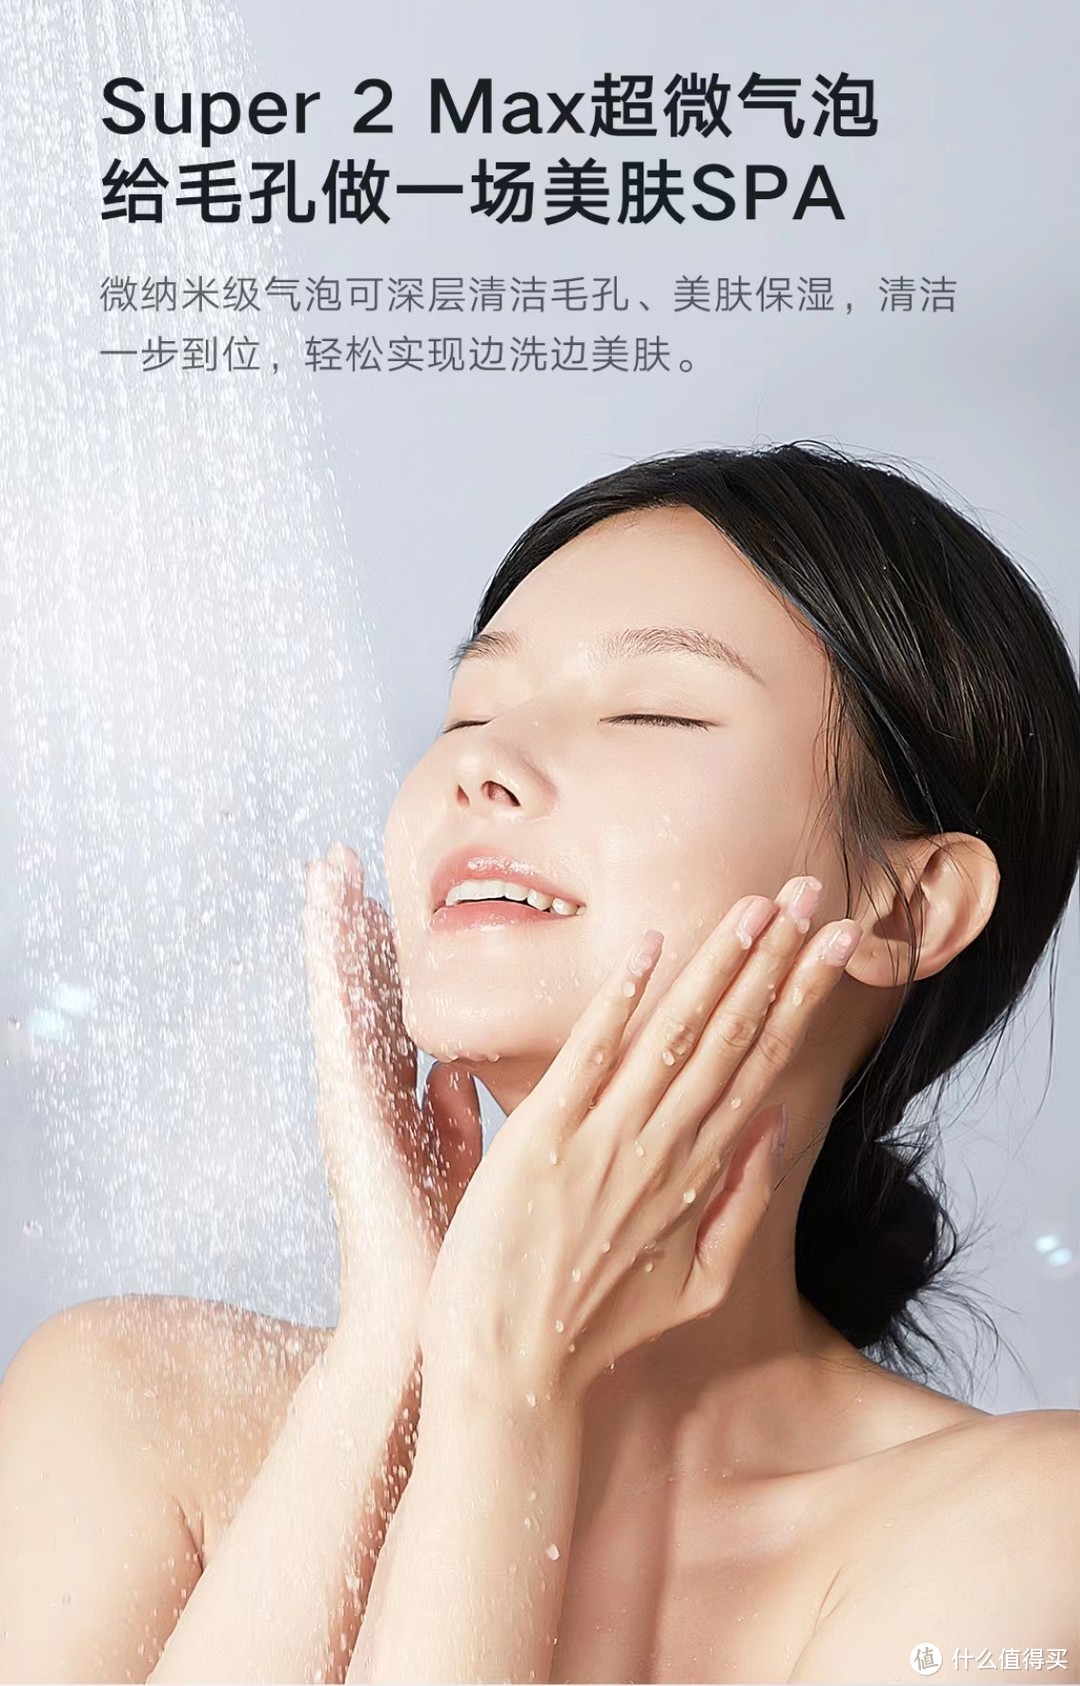 洗澡新体验:云米Super2Max热水器带来“美肤”级深层洁净